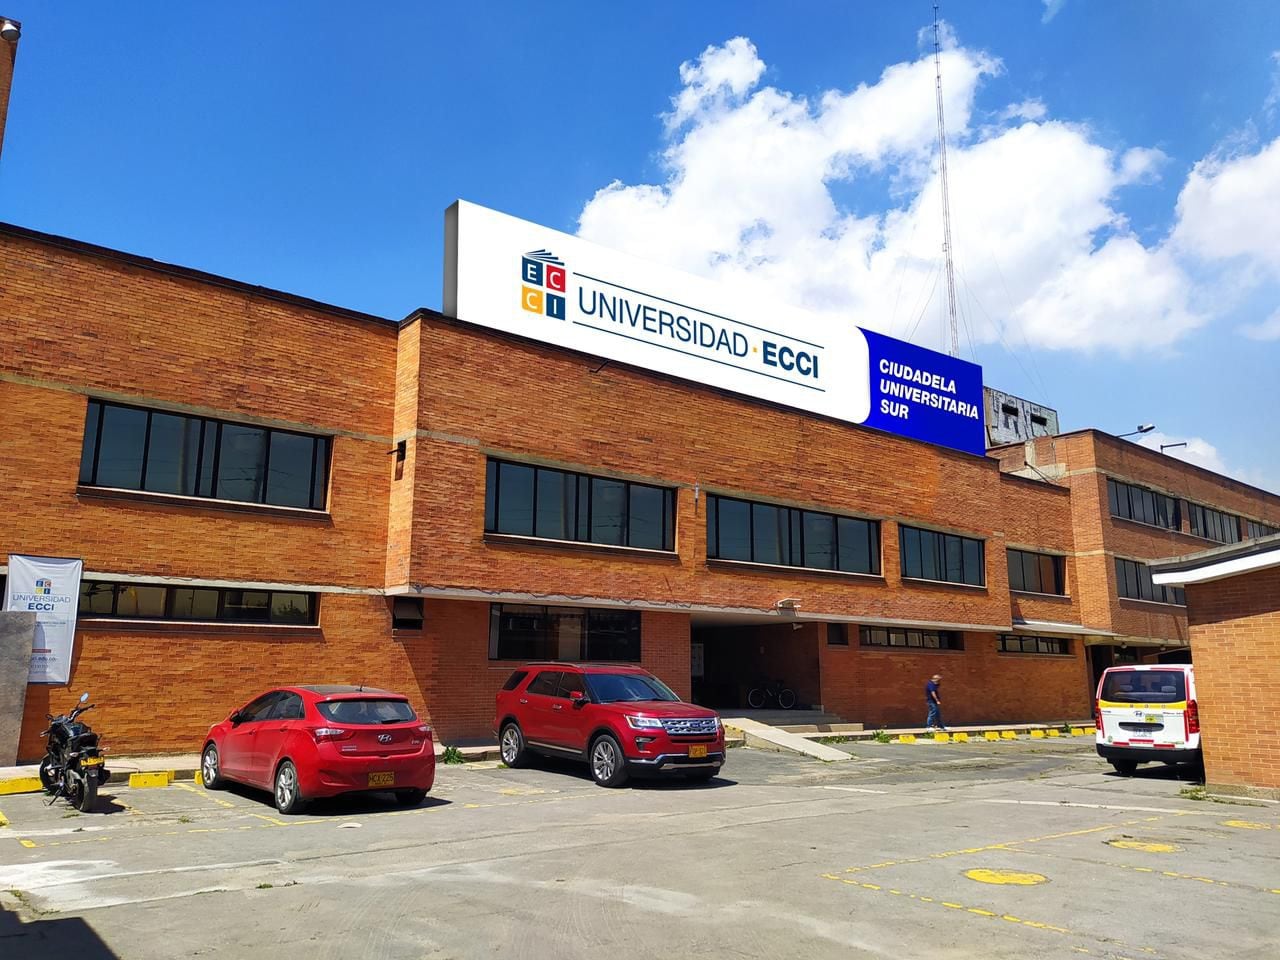 Nueva sede de la universidad ECCI al sur de Bogotá